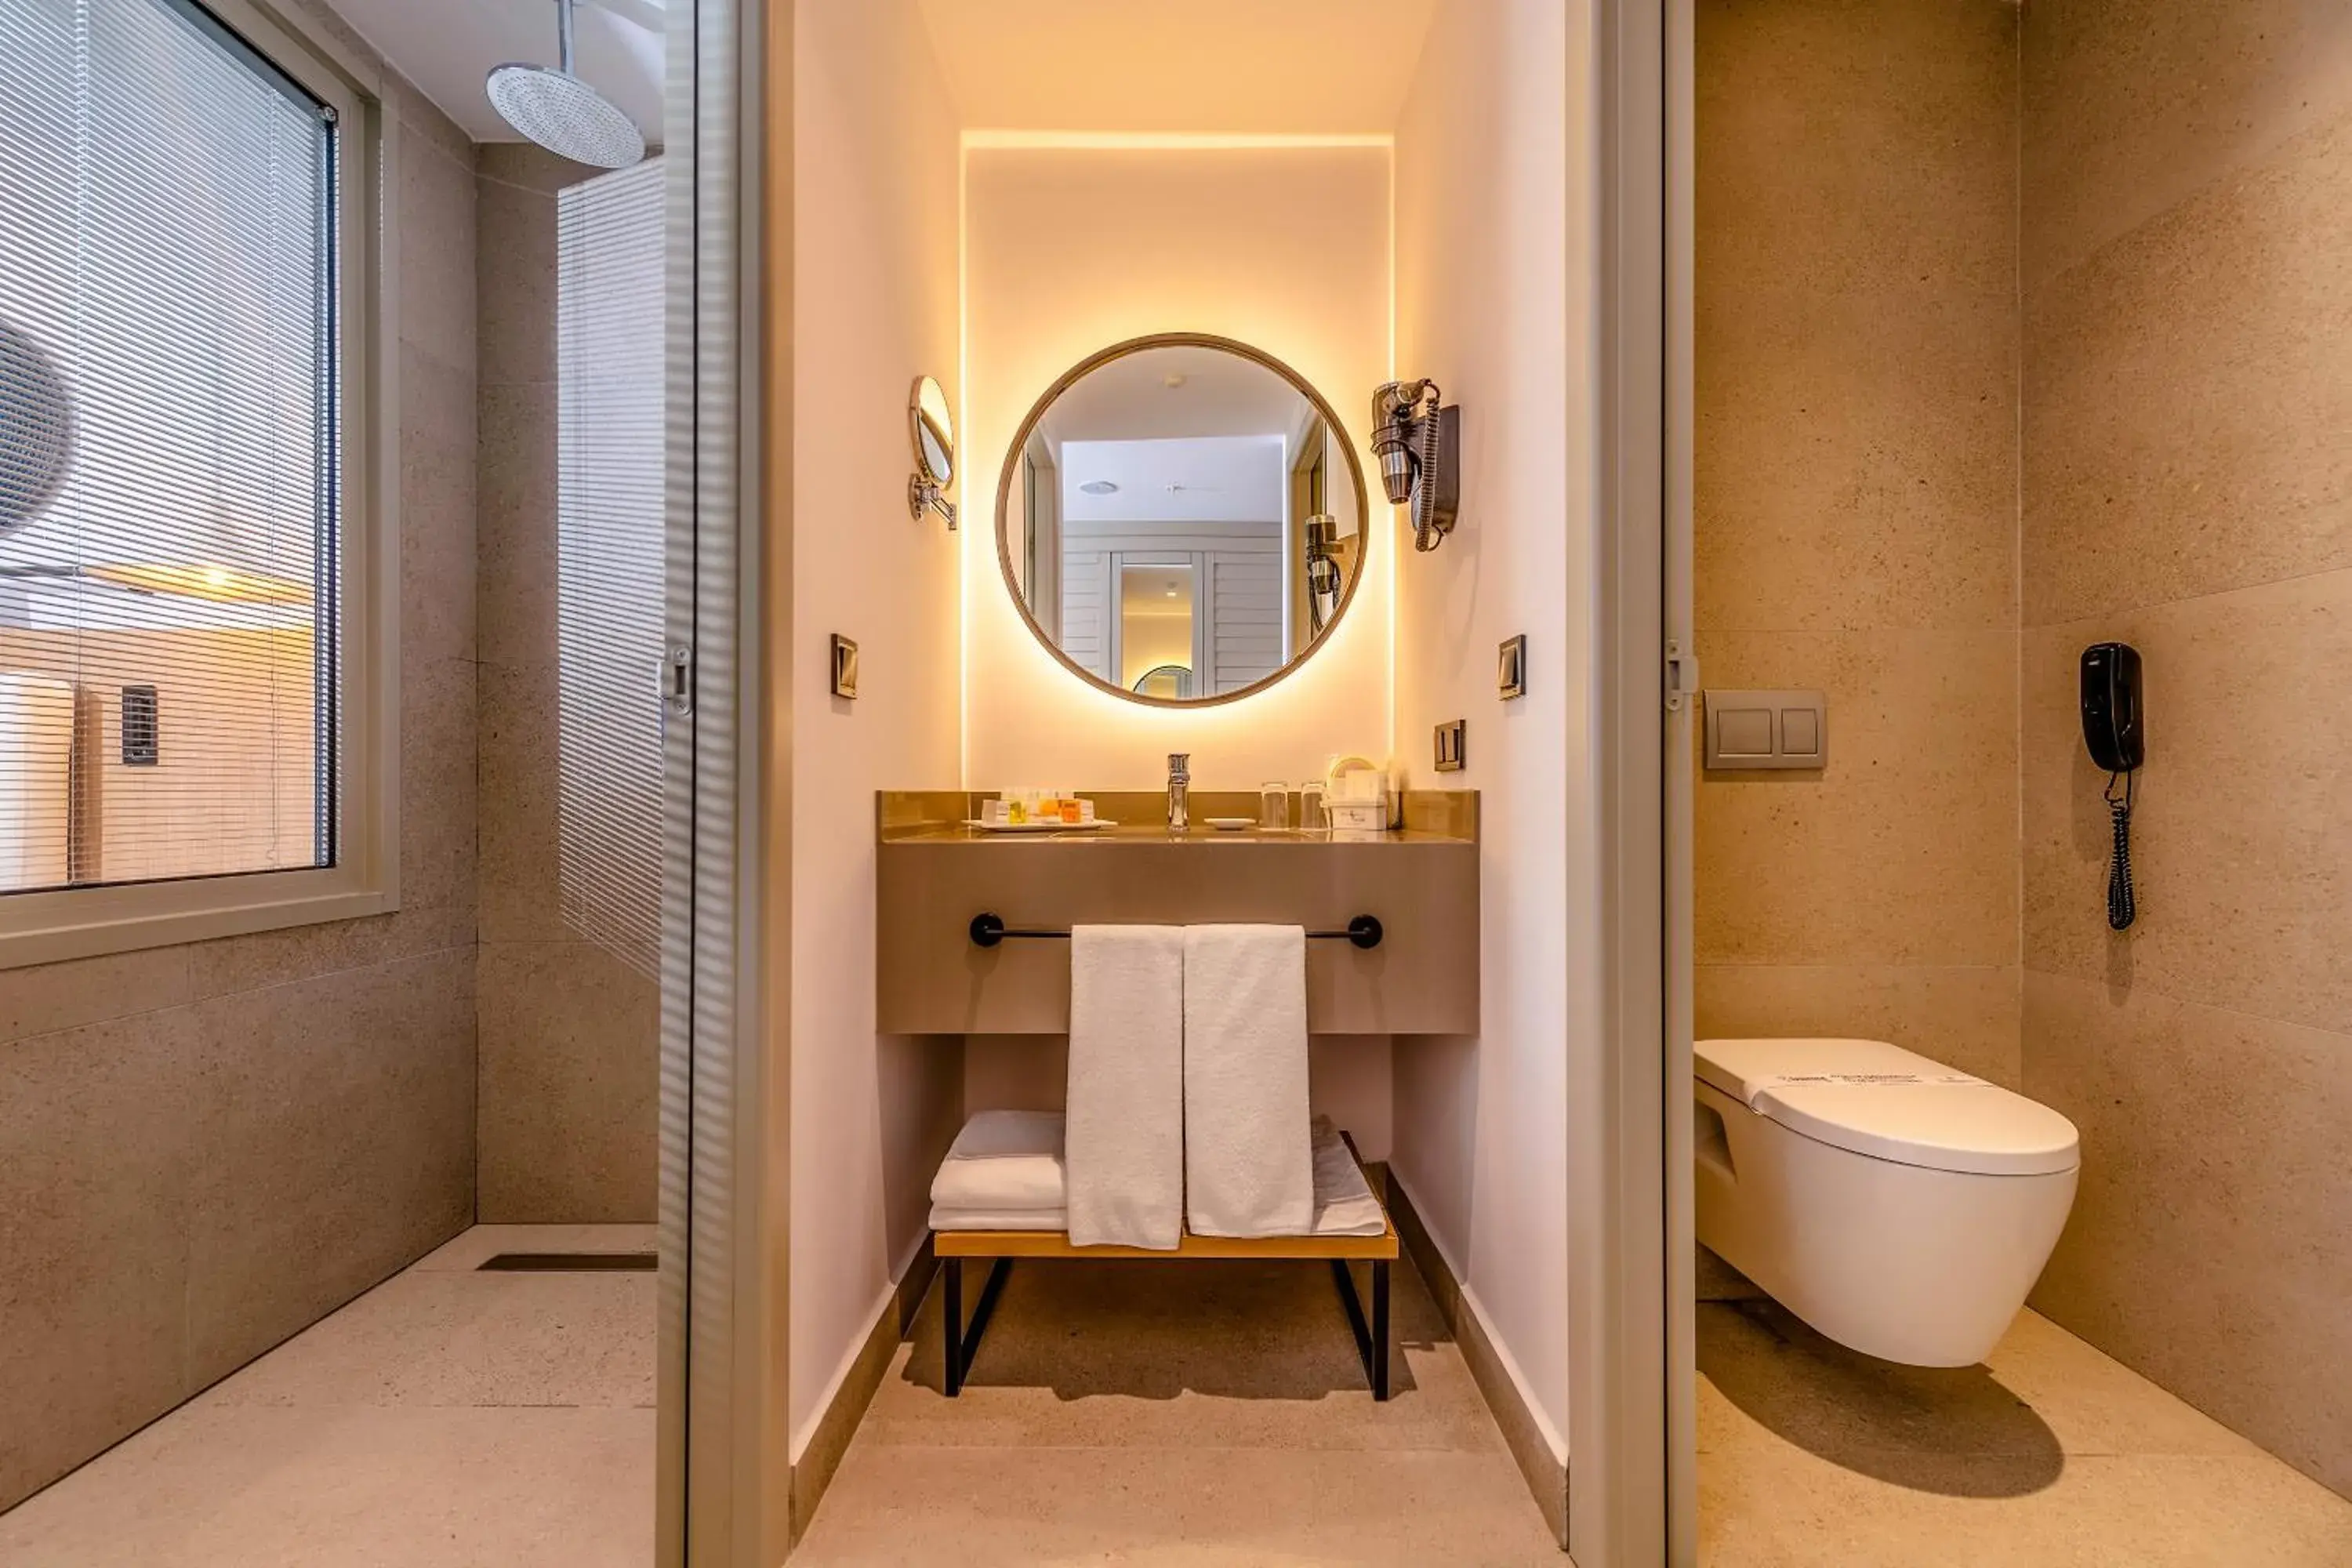 Toilet, Bathroom in Belek Beach Resort Hotel